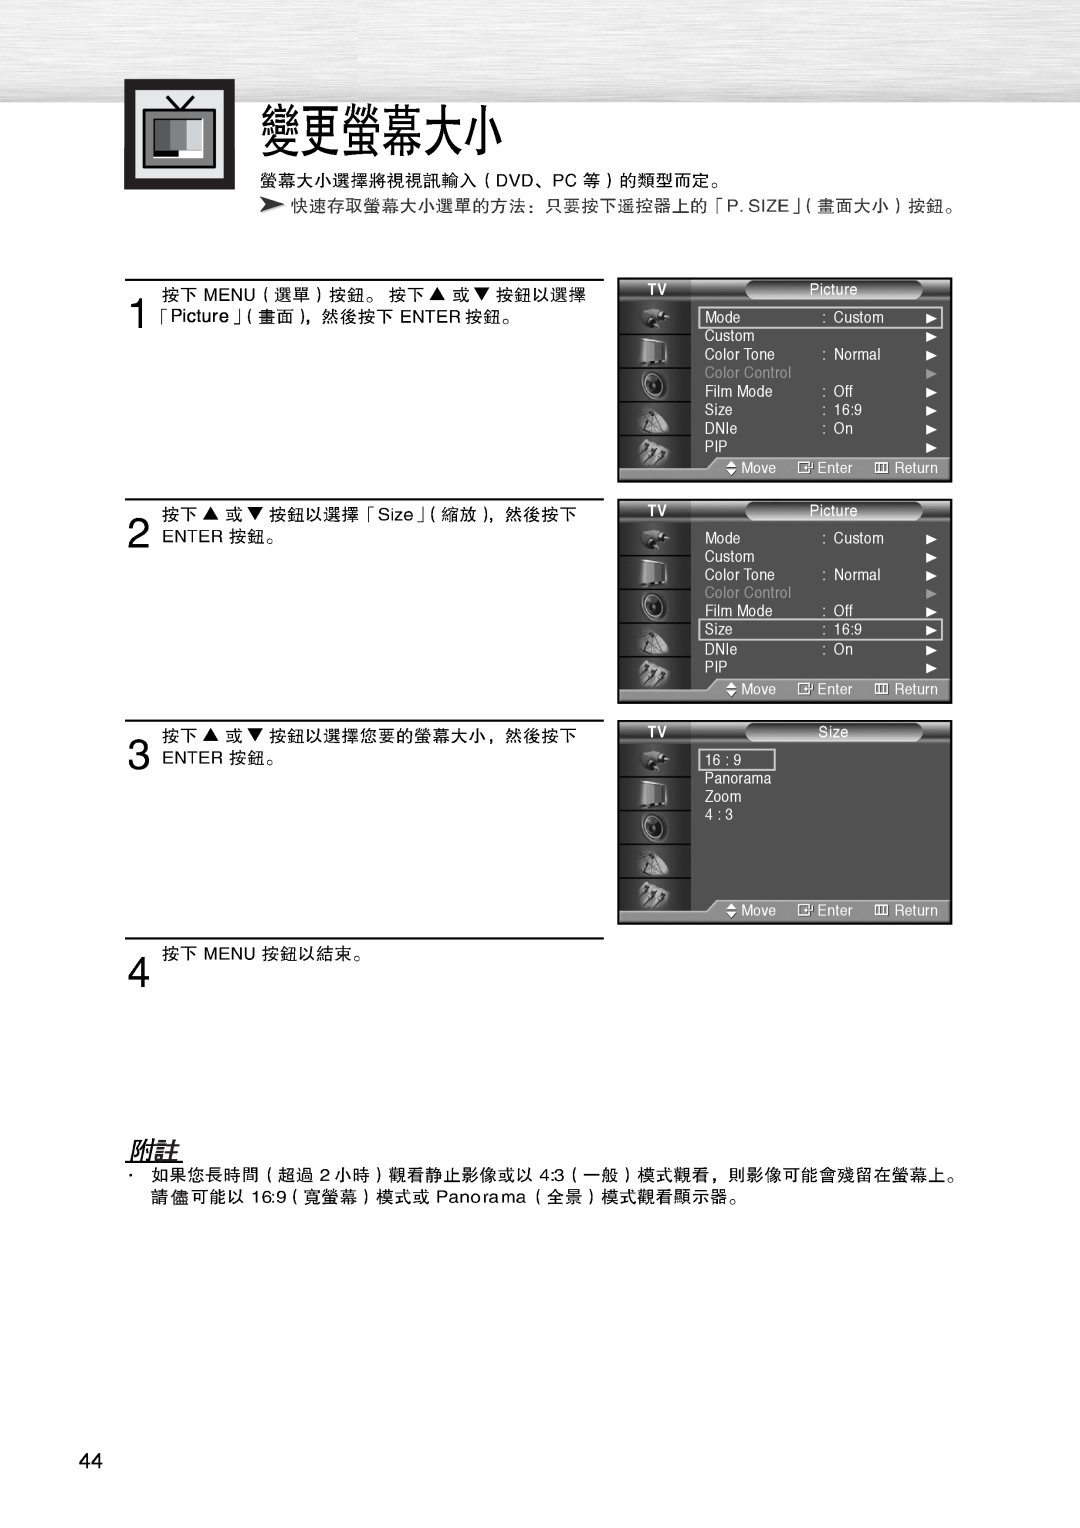 Samsung PL-42D4S manual Picture, Color Control 